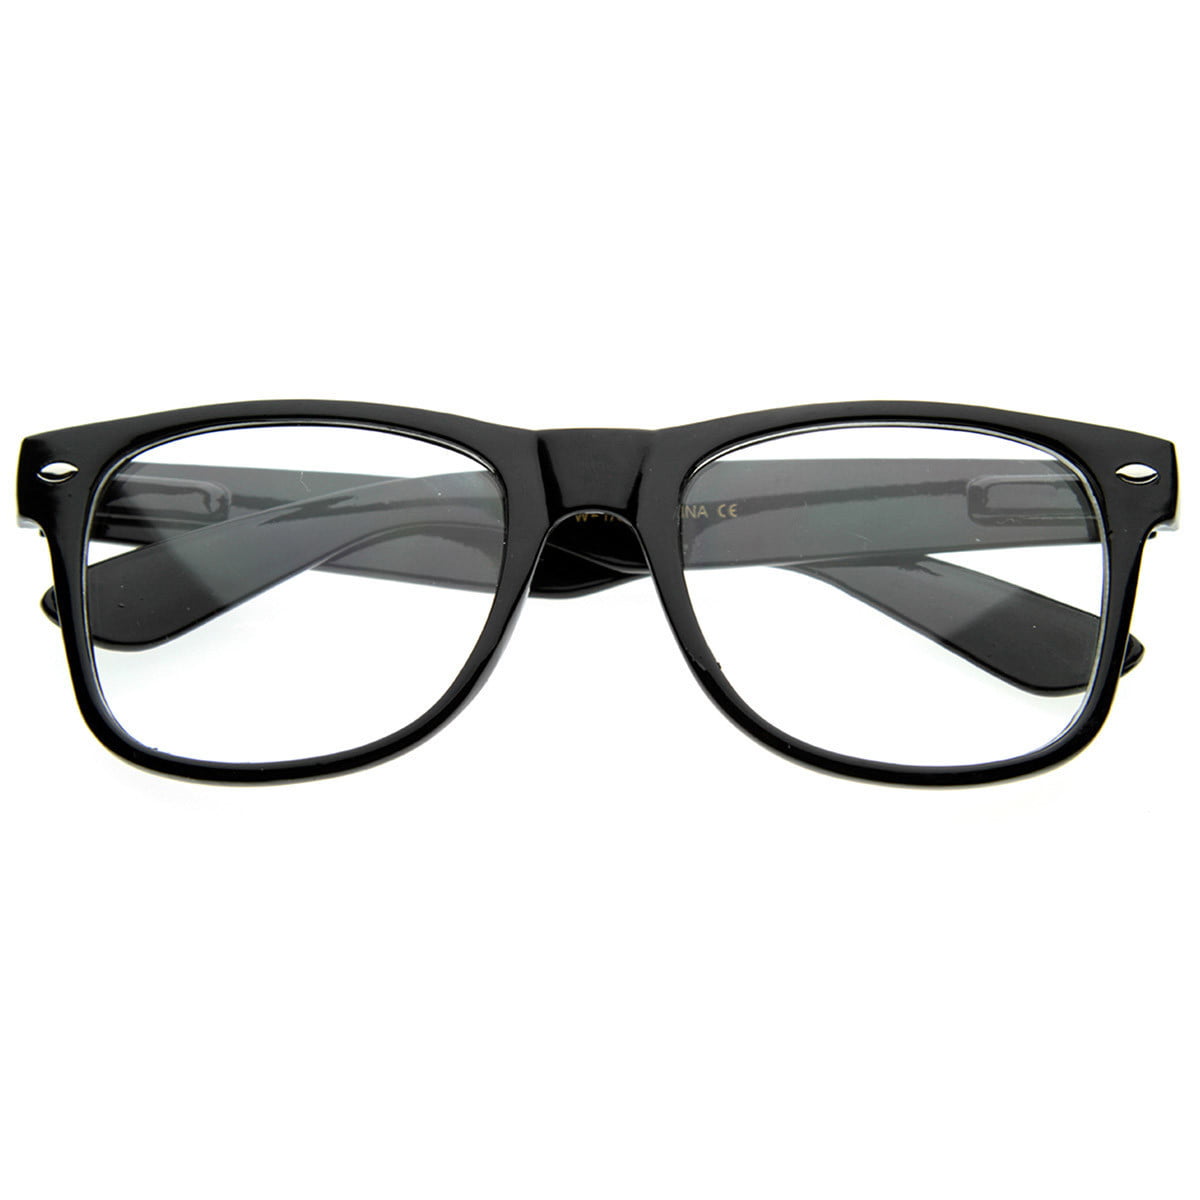 Retro Clear Lens Glasses Eyewear Nerd Office Fake Smart Frames UV Protection 